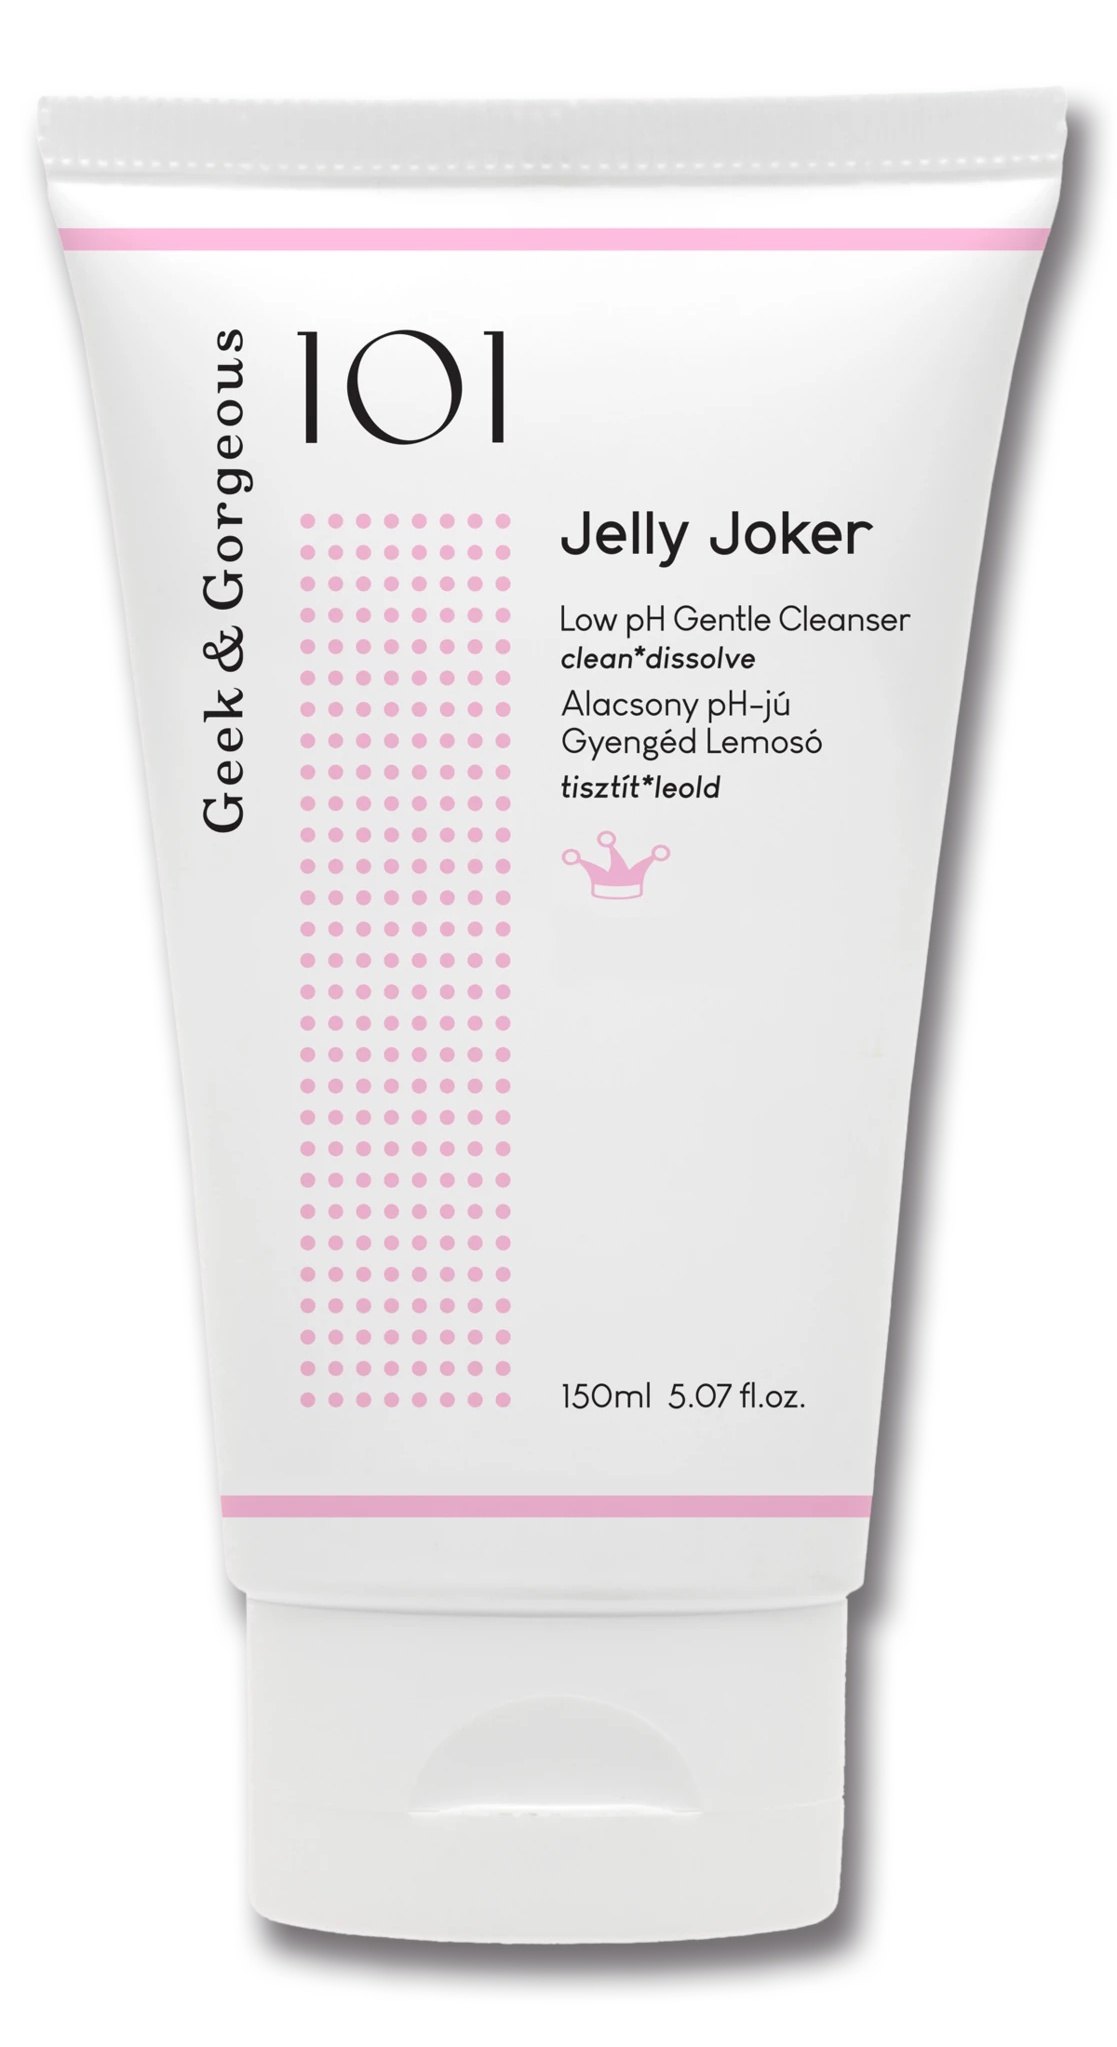 Geek & Gorgeous Jelly Joker Low pH Gentle Cleanser